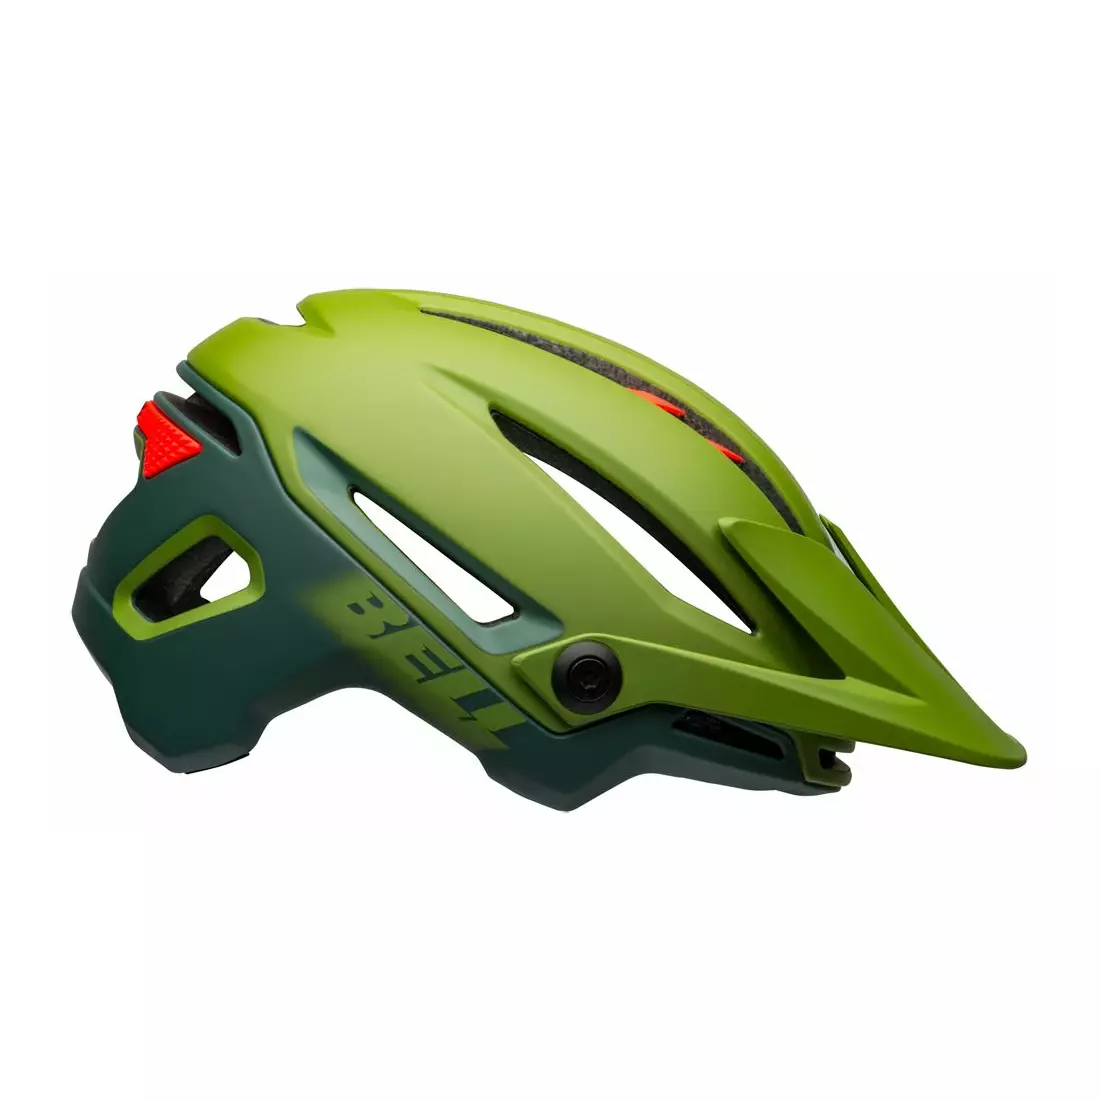 BELL kerékpáros sisak mtb SIXER INTEGRATED MIPS, matte gloss green infrared 